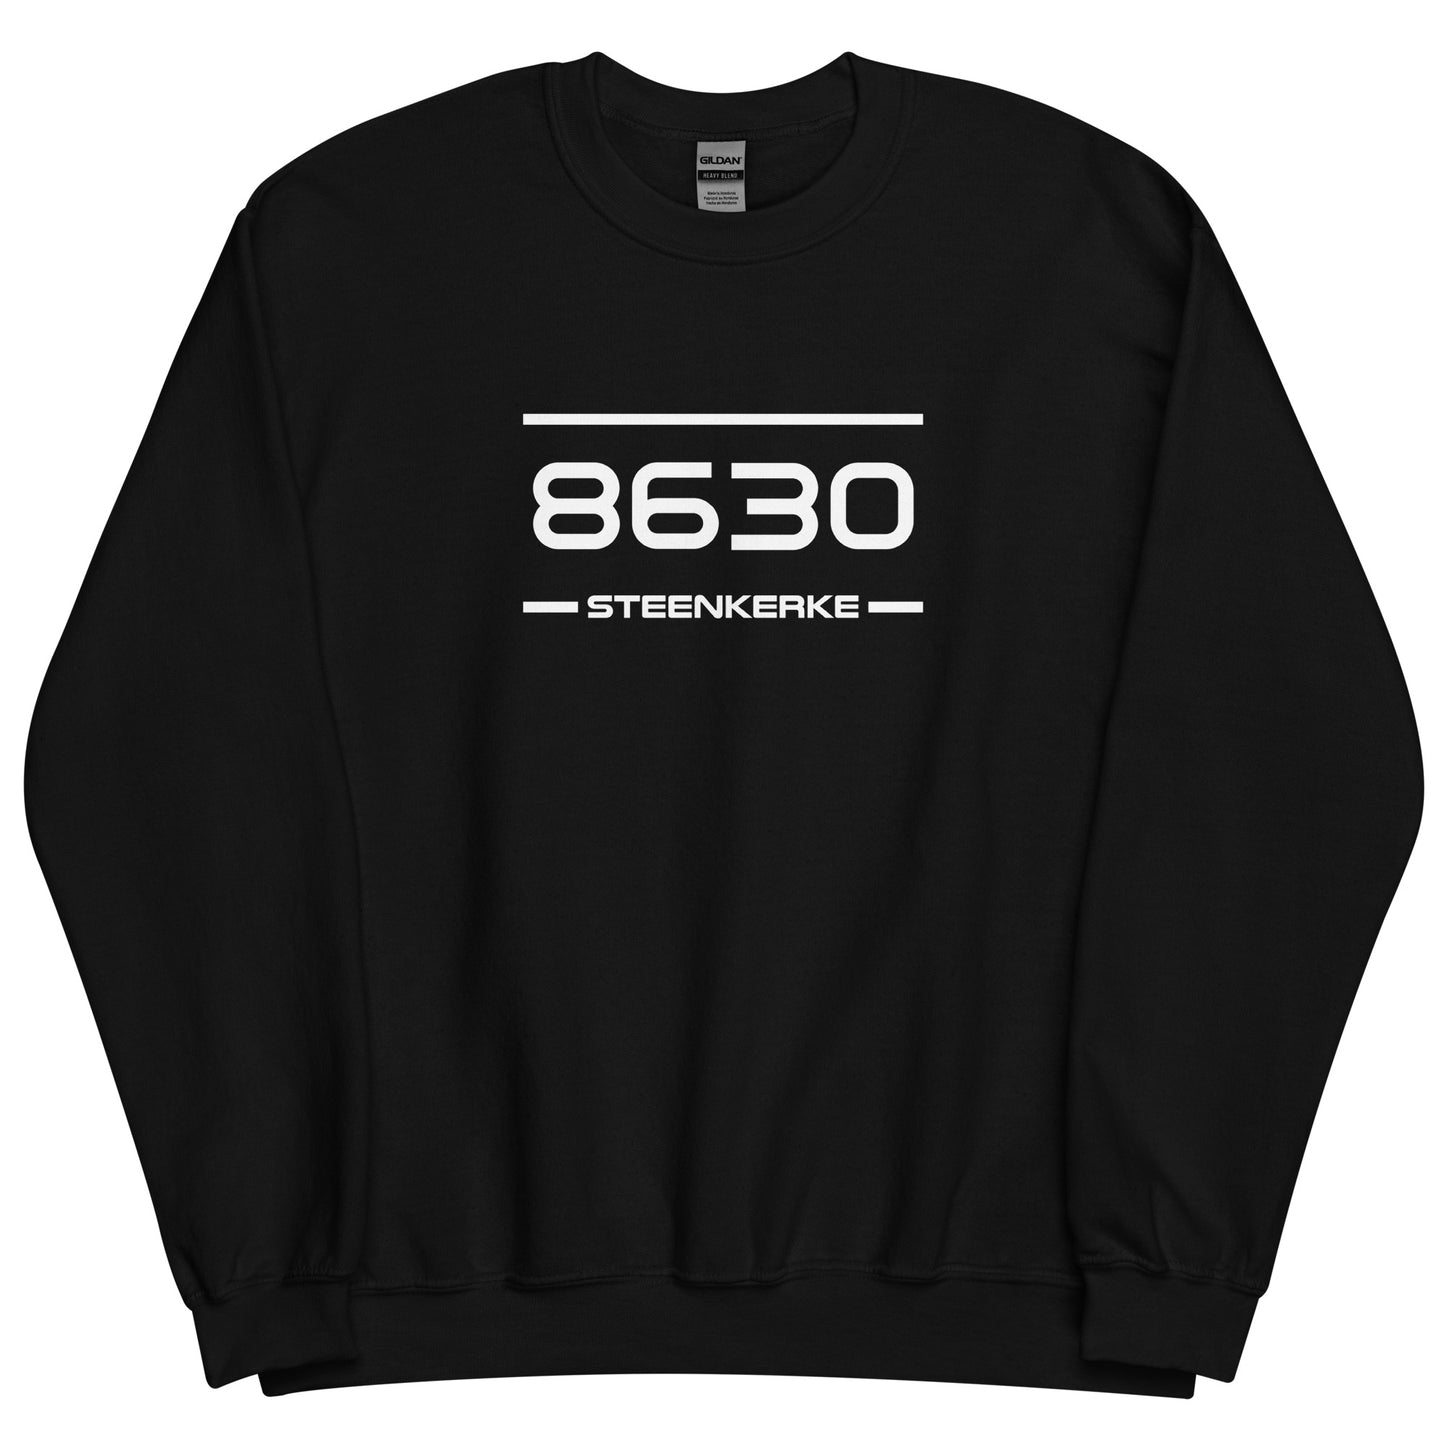 Sweater - 8630 - Steenkerke (M/V)